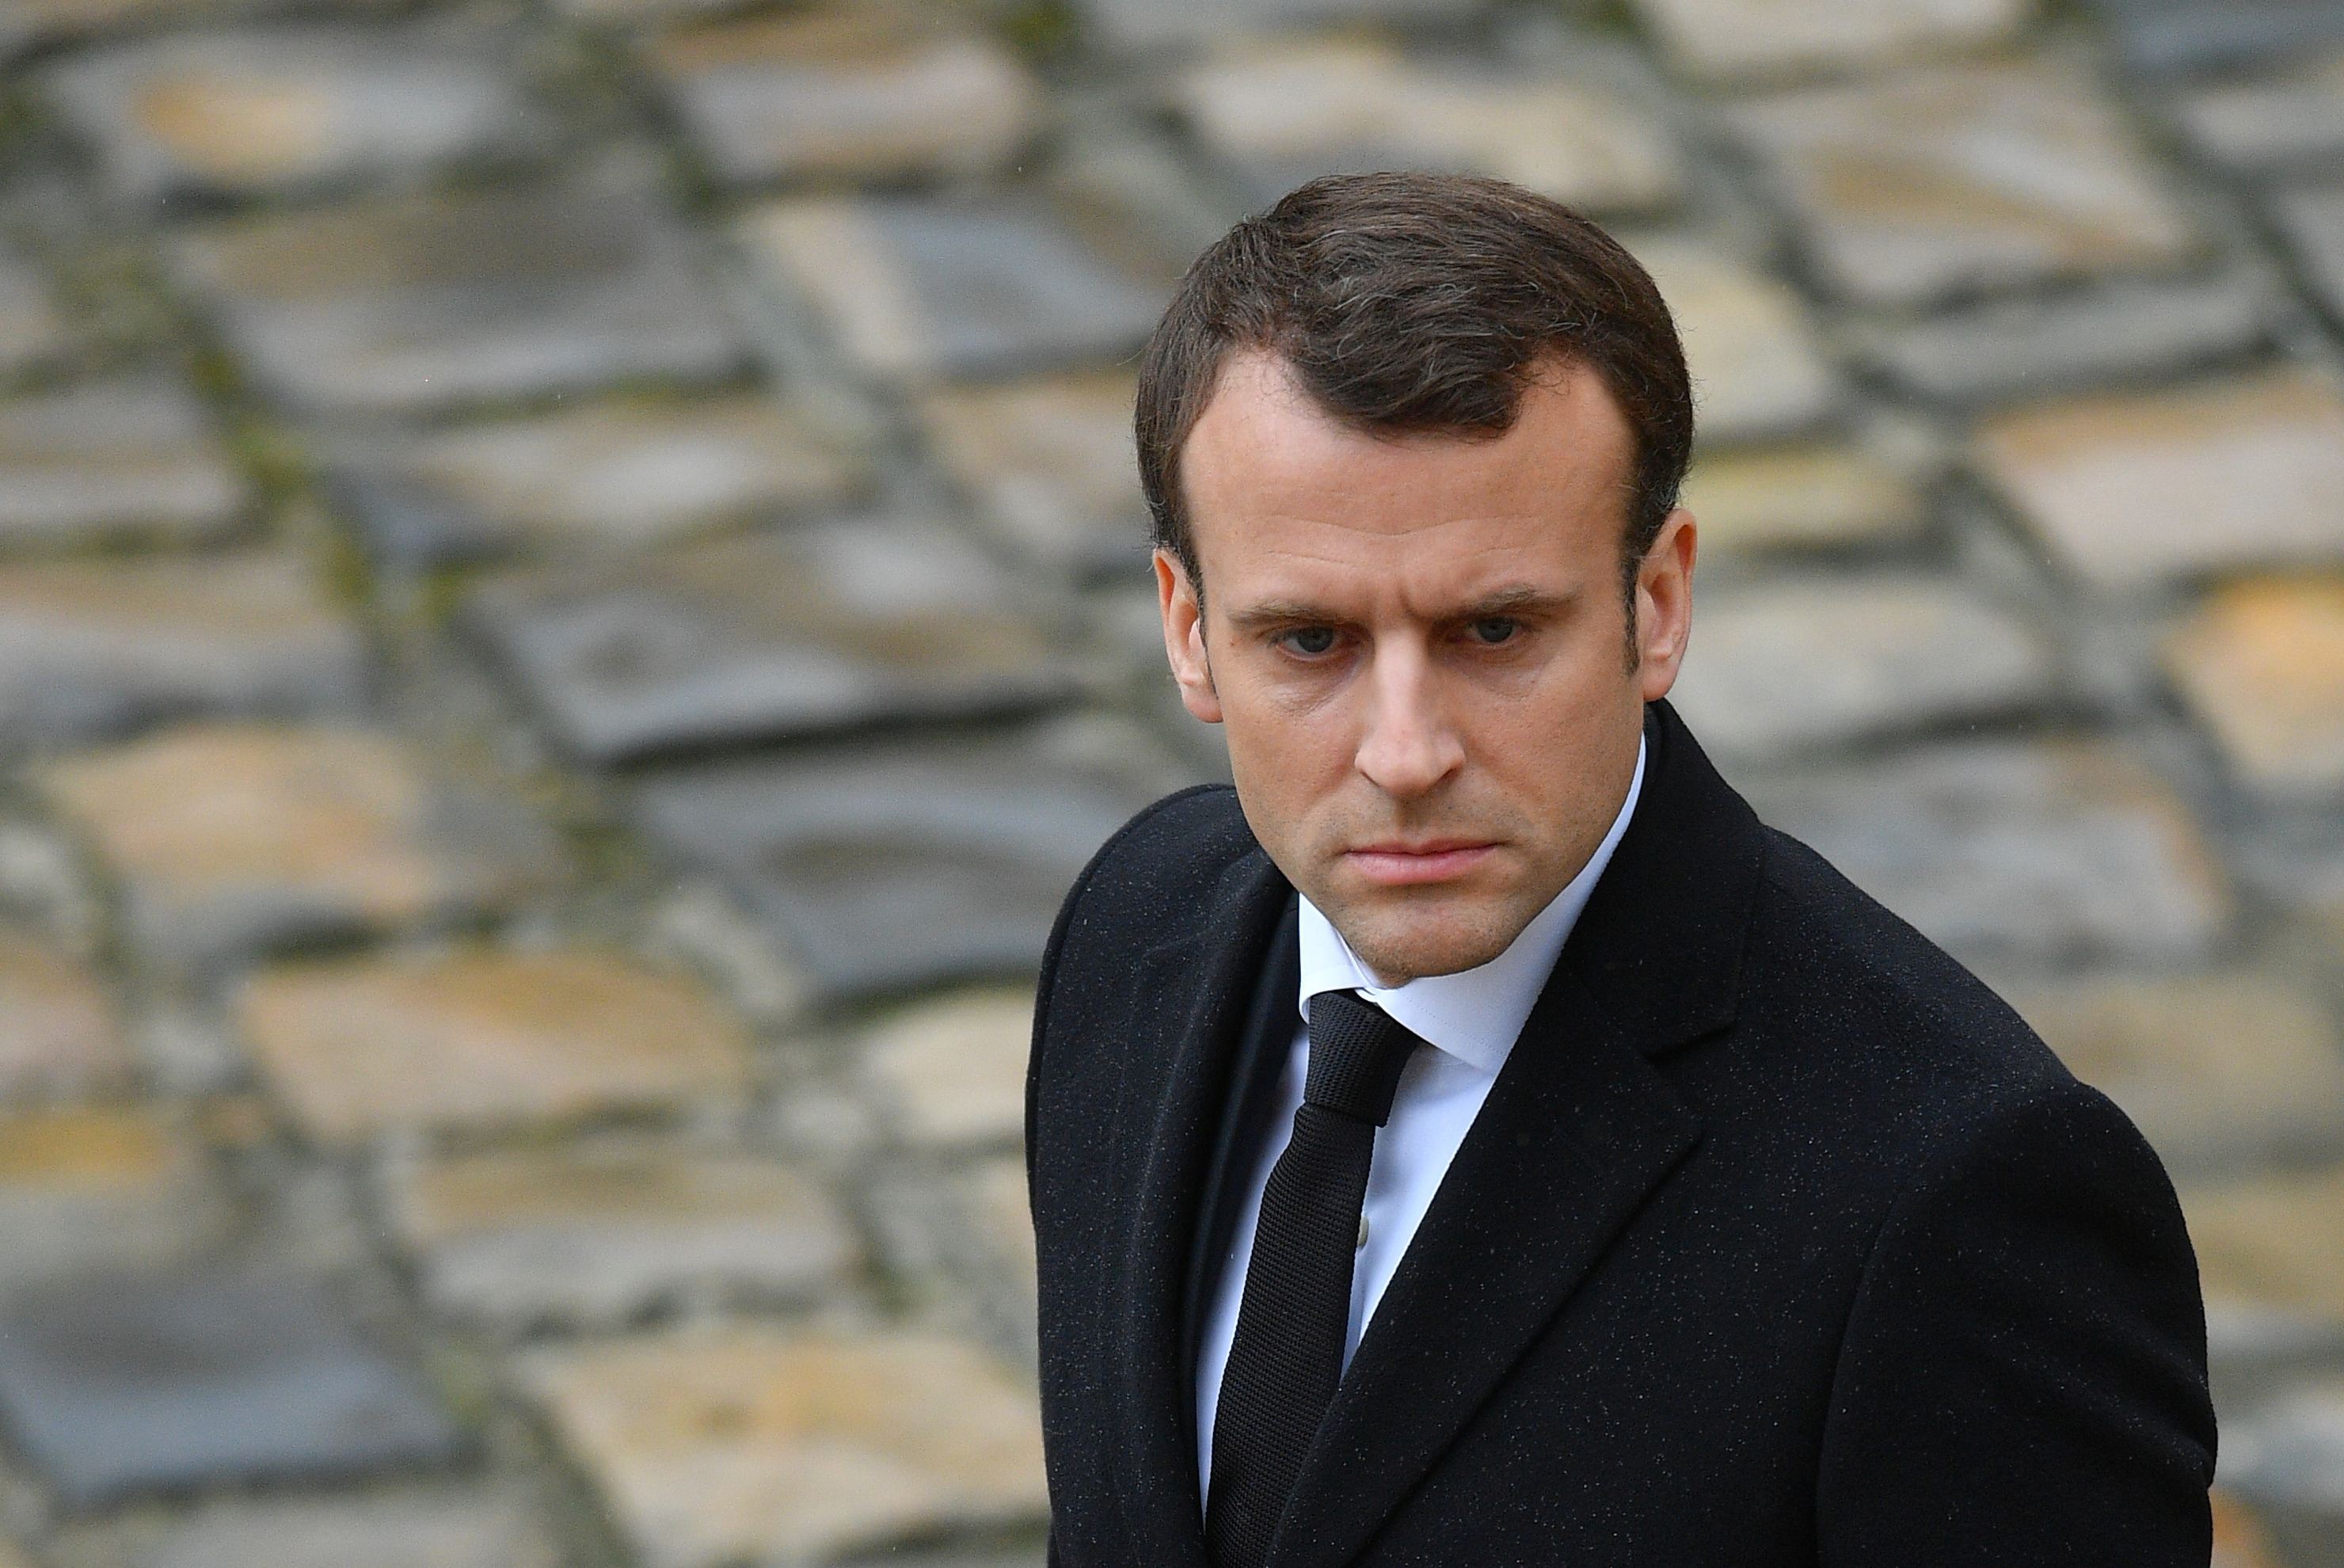  Emmanuel Macron a fost mandatat de liderii G7 să transmită un mesaj Iranului